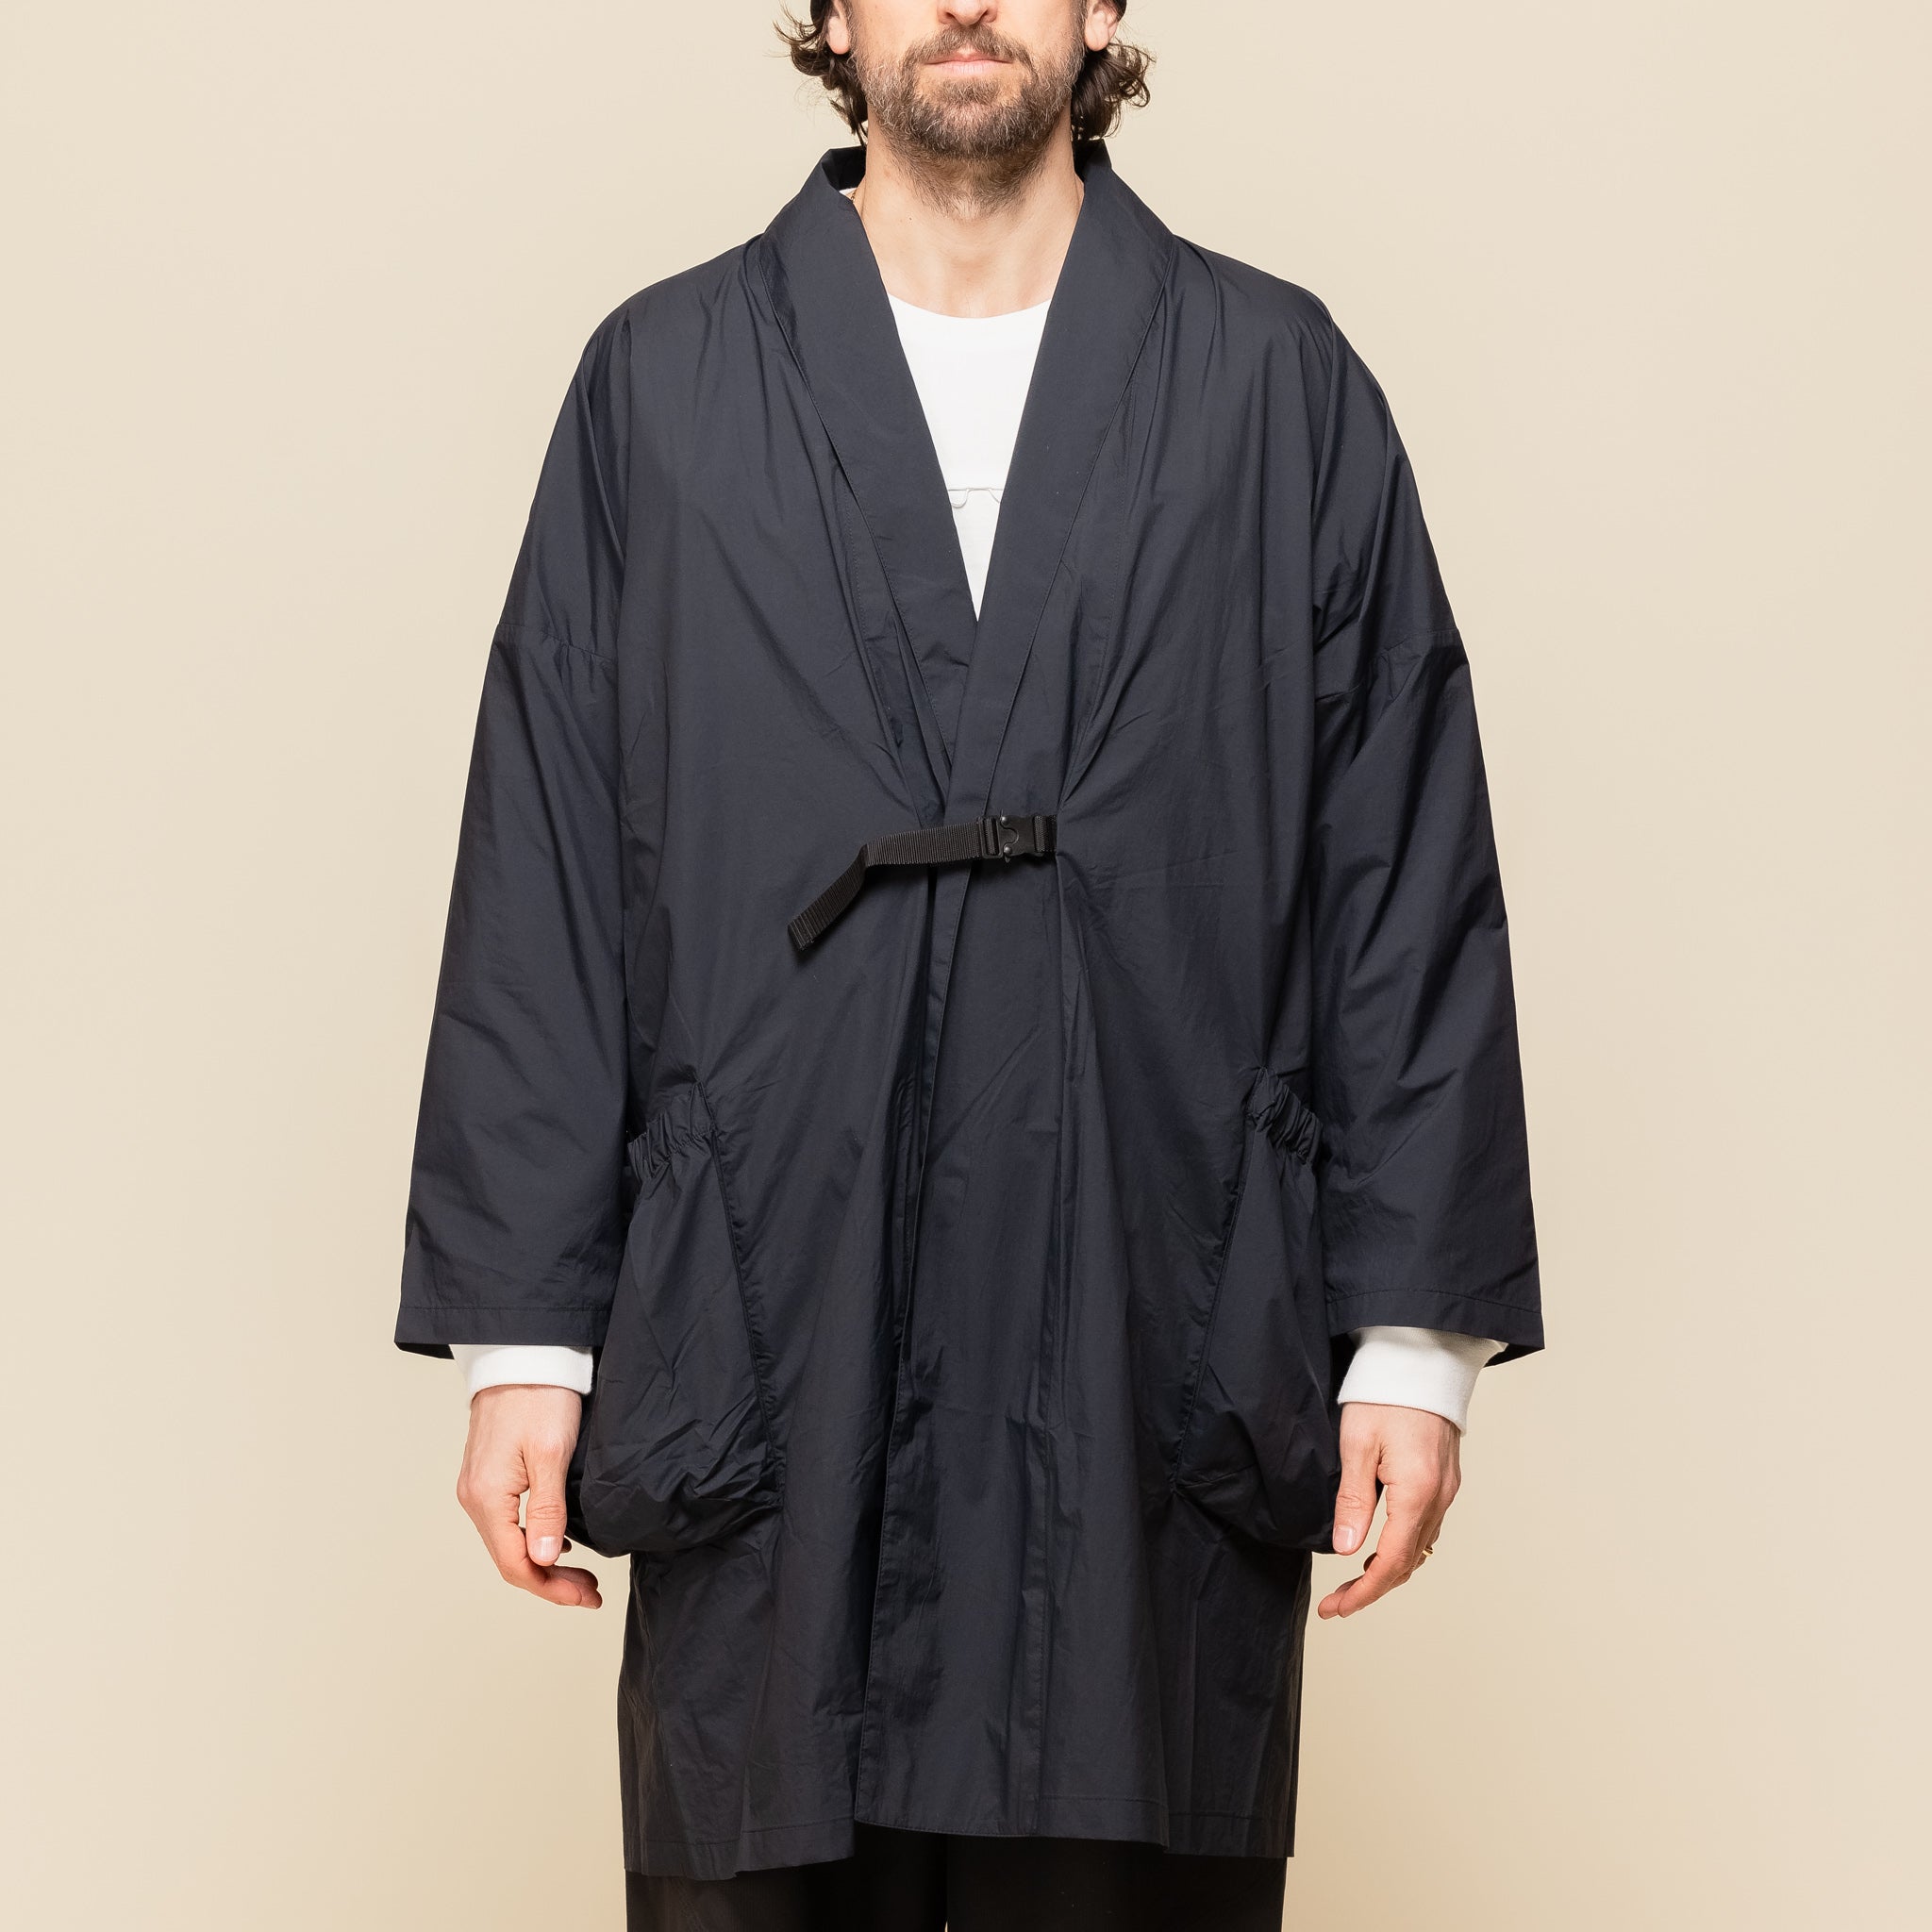 CMF Comfy Outdoor Garment - Haori Coat - Black